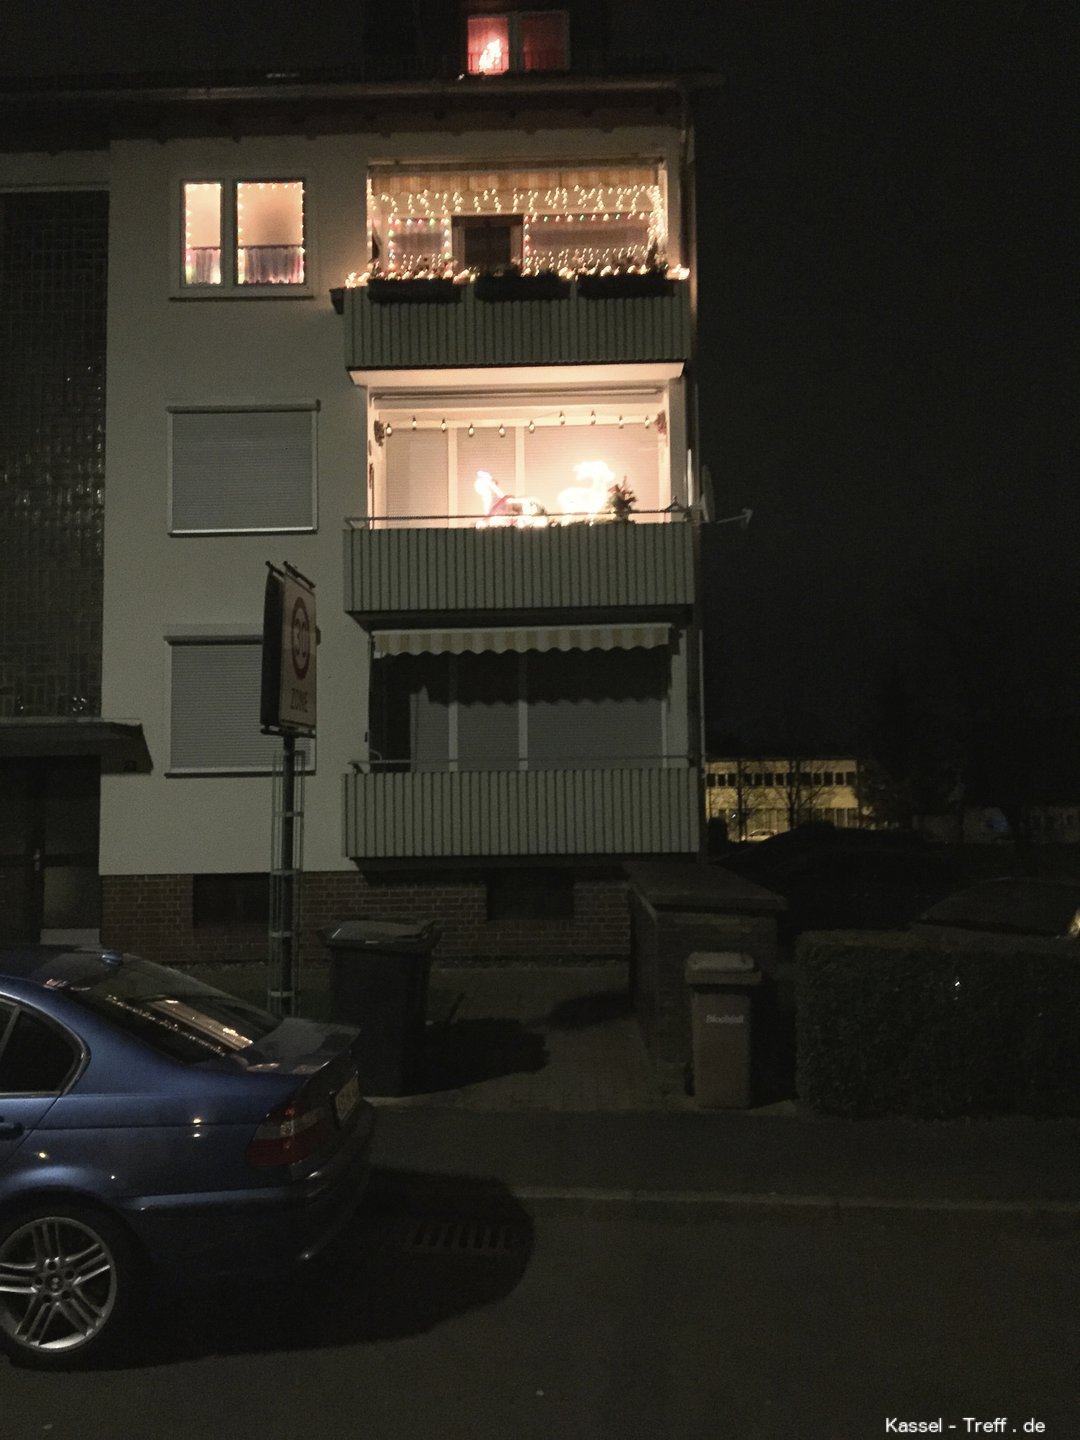 Weihnachtsbeleuchtung am Balkon